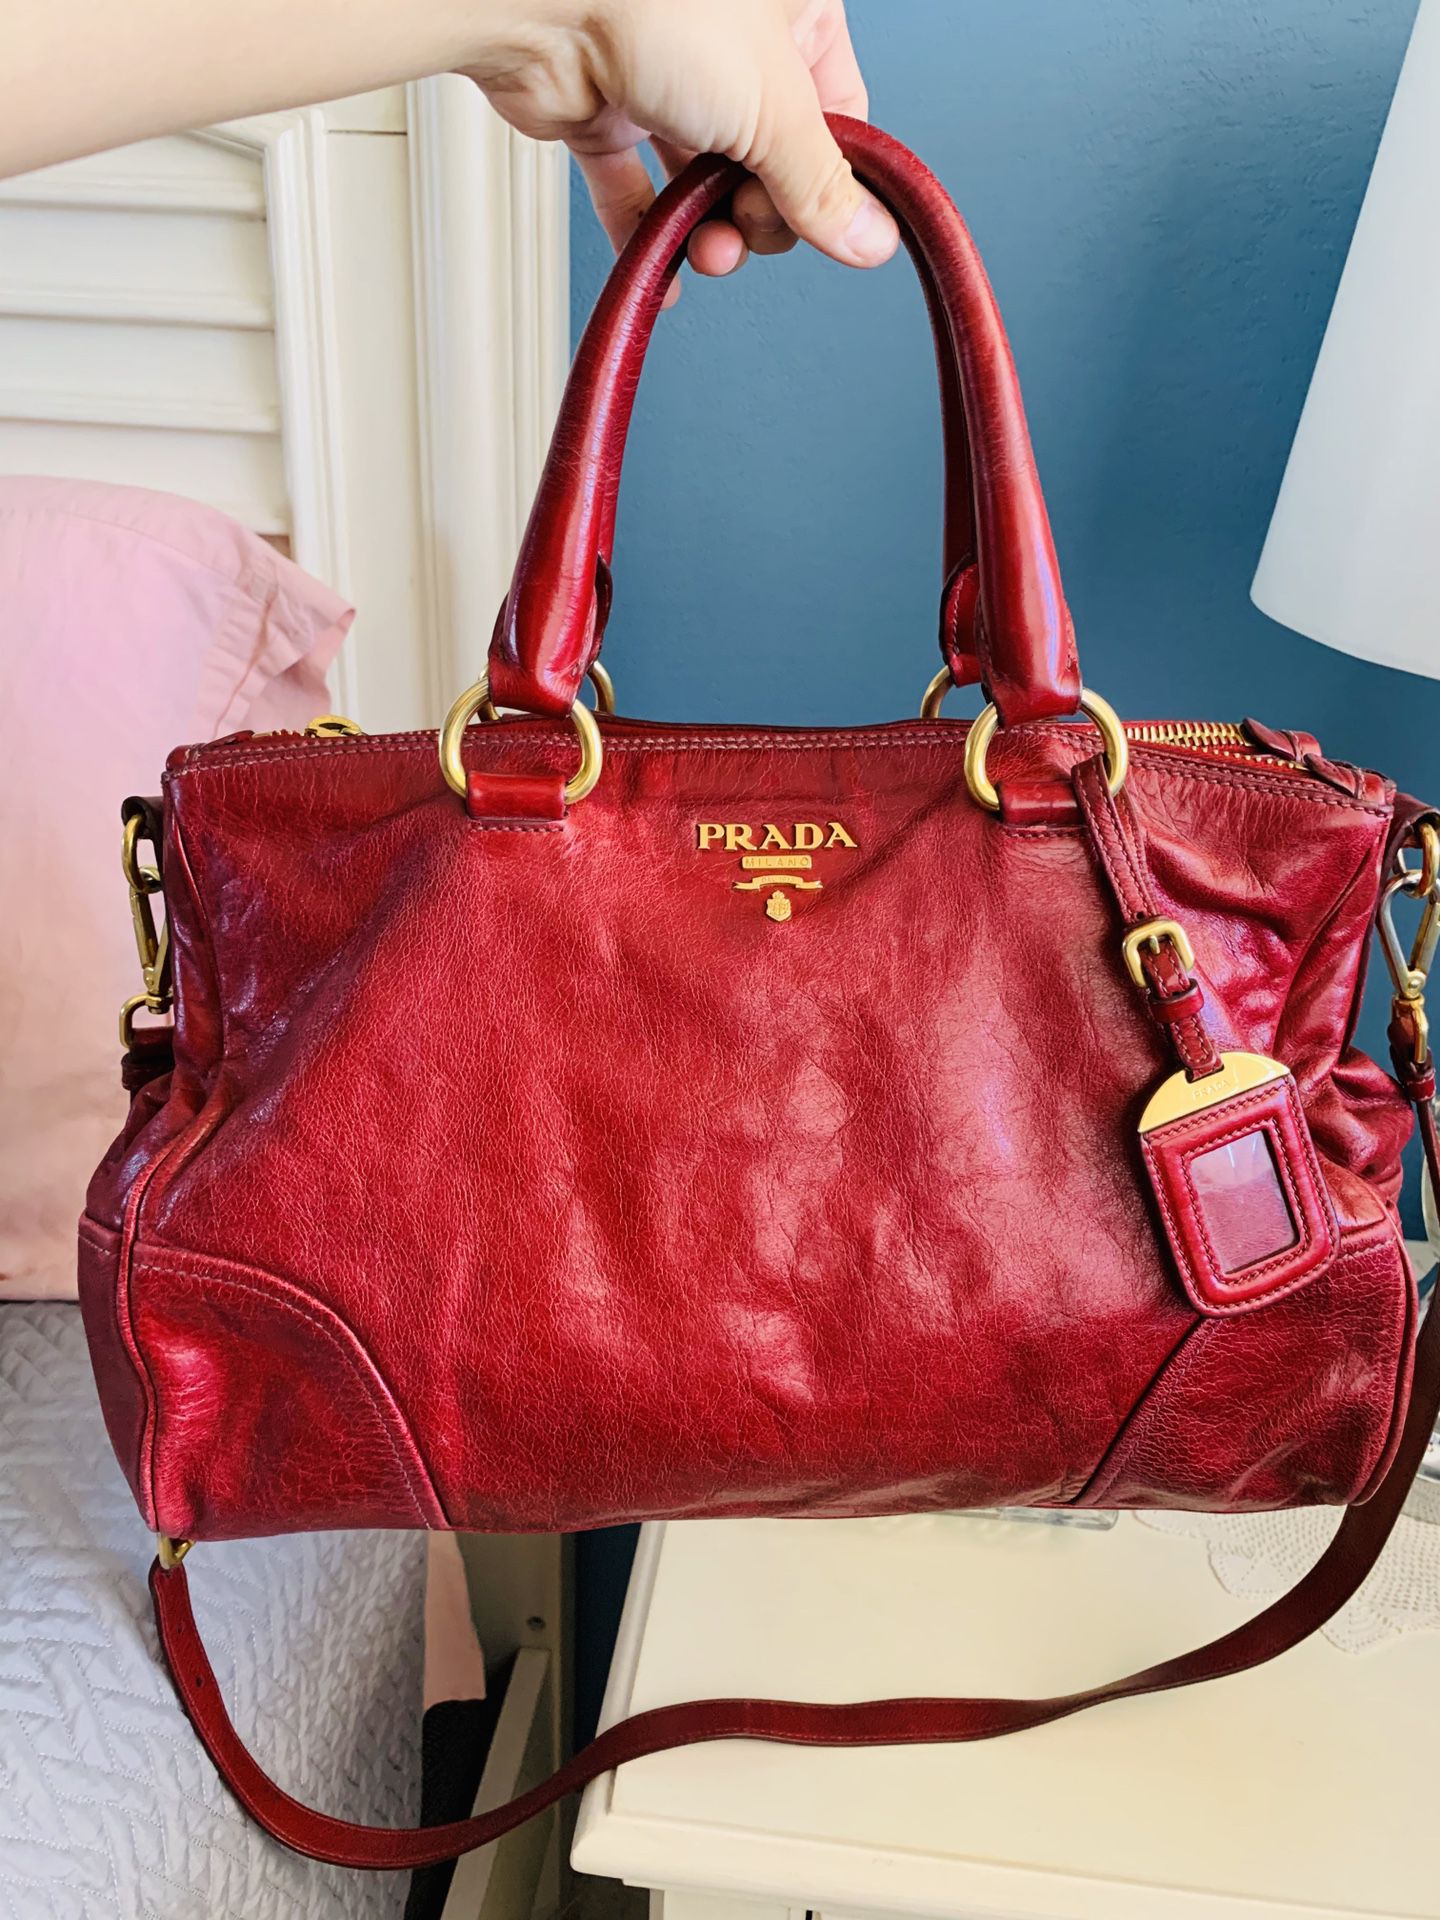 🌸PRADA Rubino Vitello Shine Shopping Tote Bag